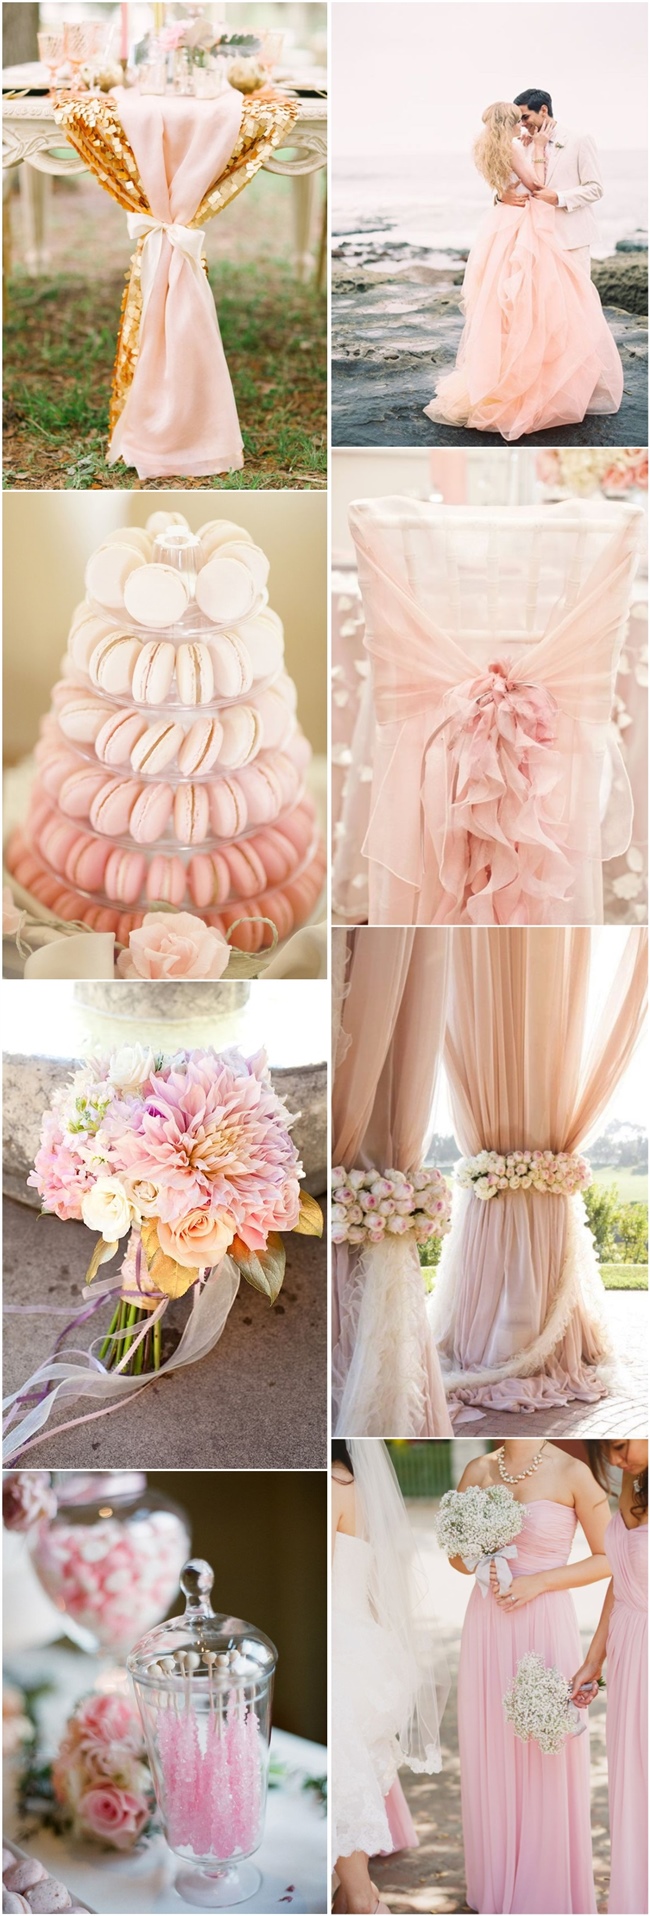 pink wedding ideas-blush wedding color ideas